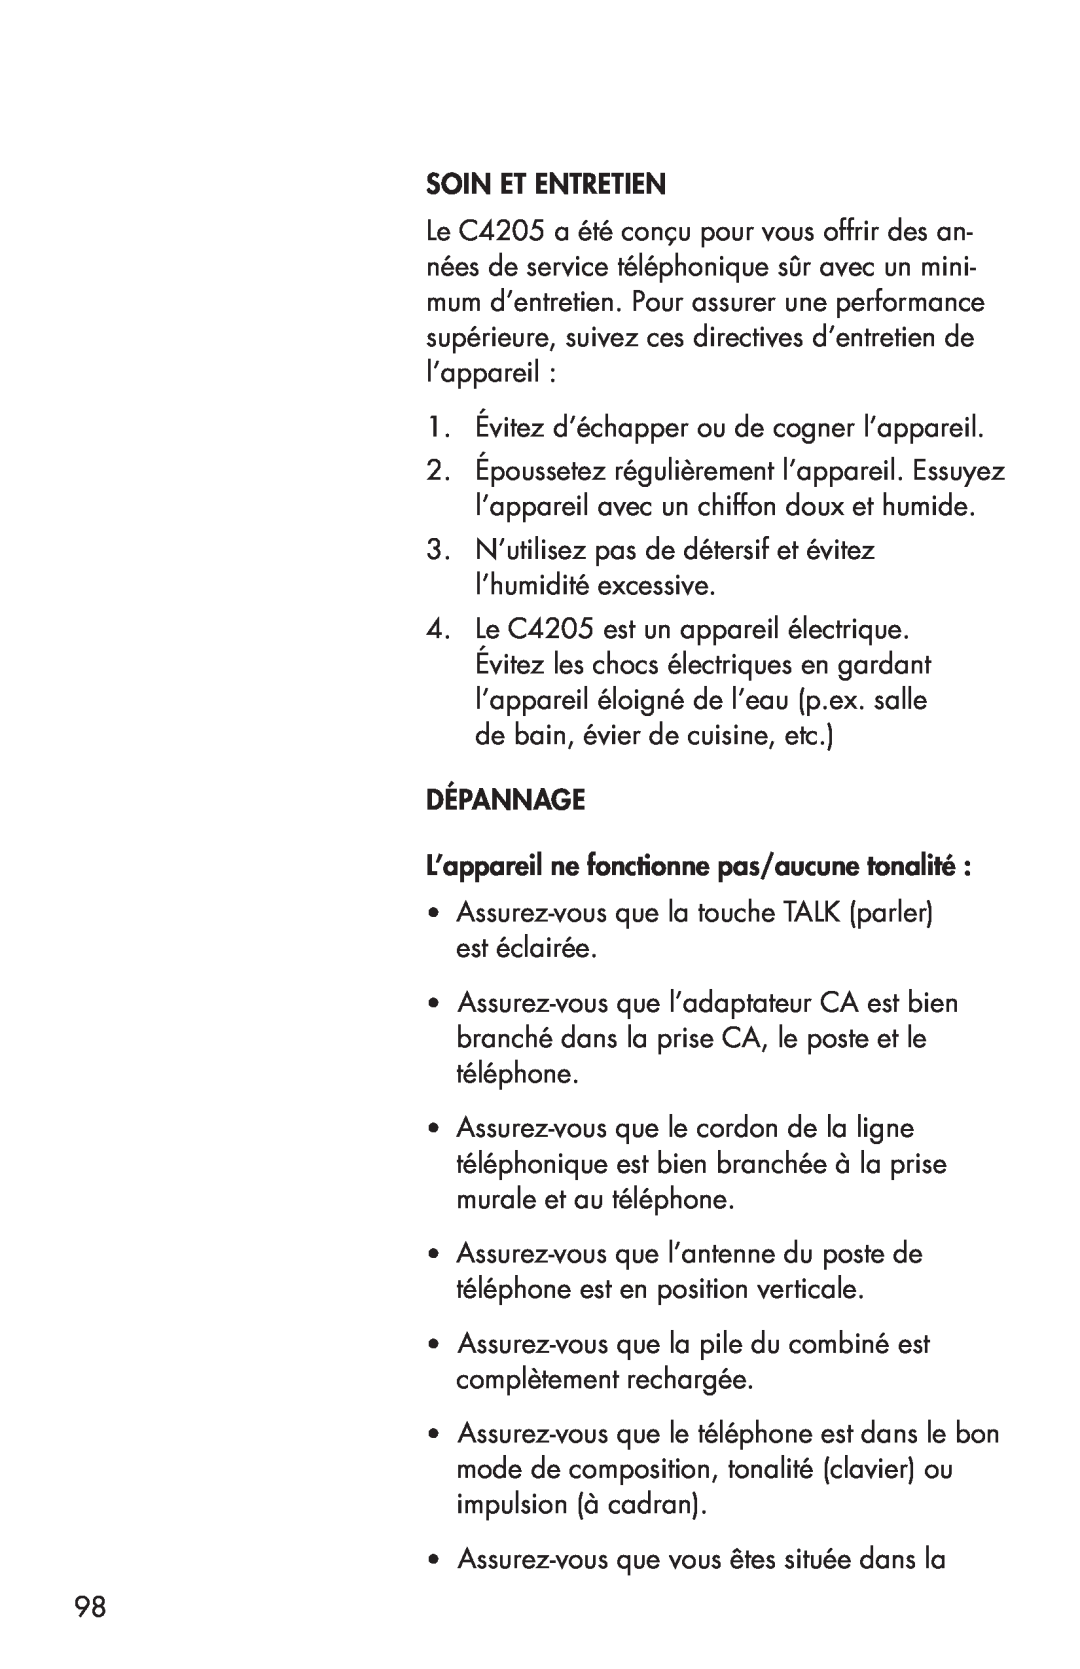 Clarity C4205 manual Soin Et Entretien 